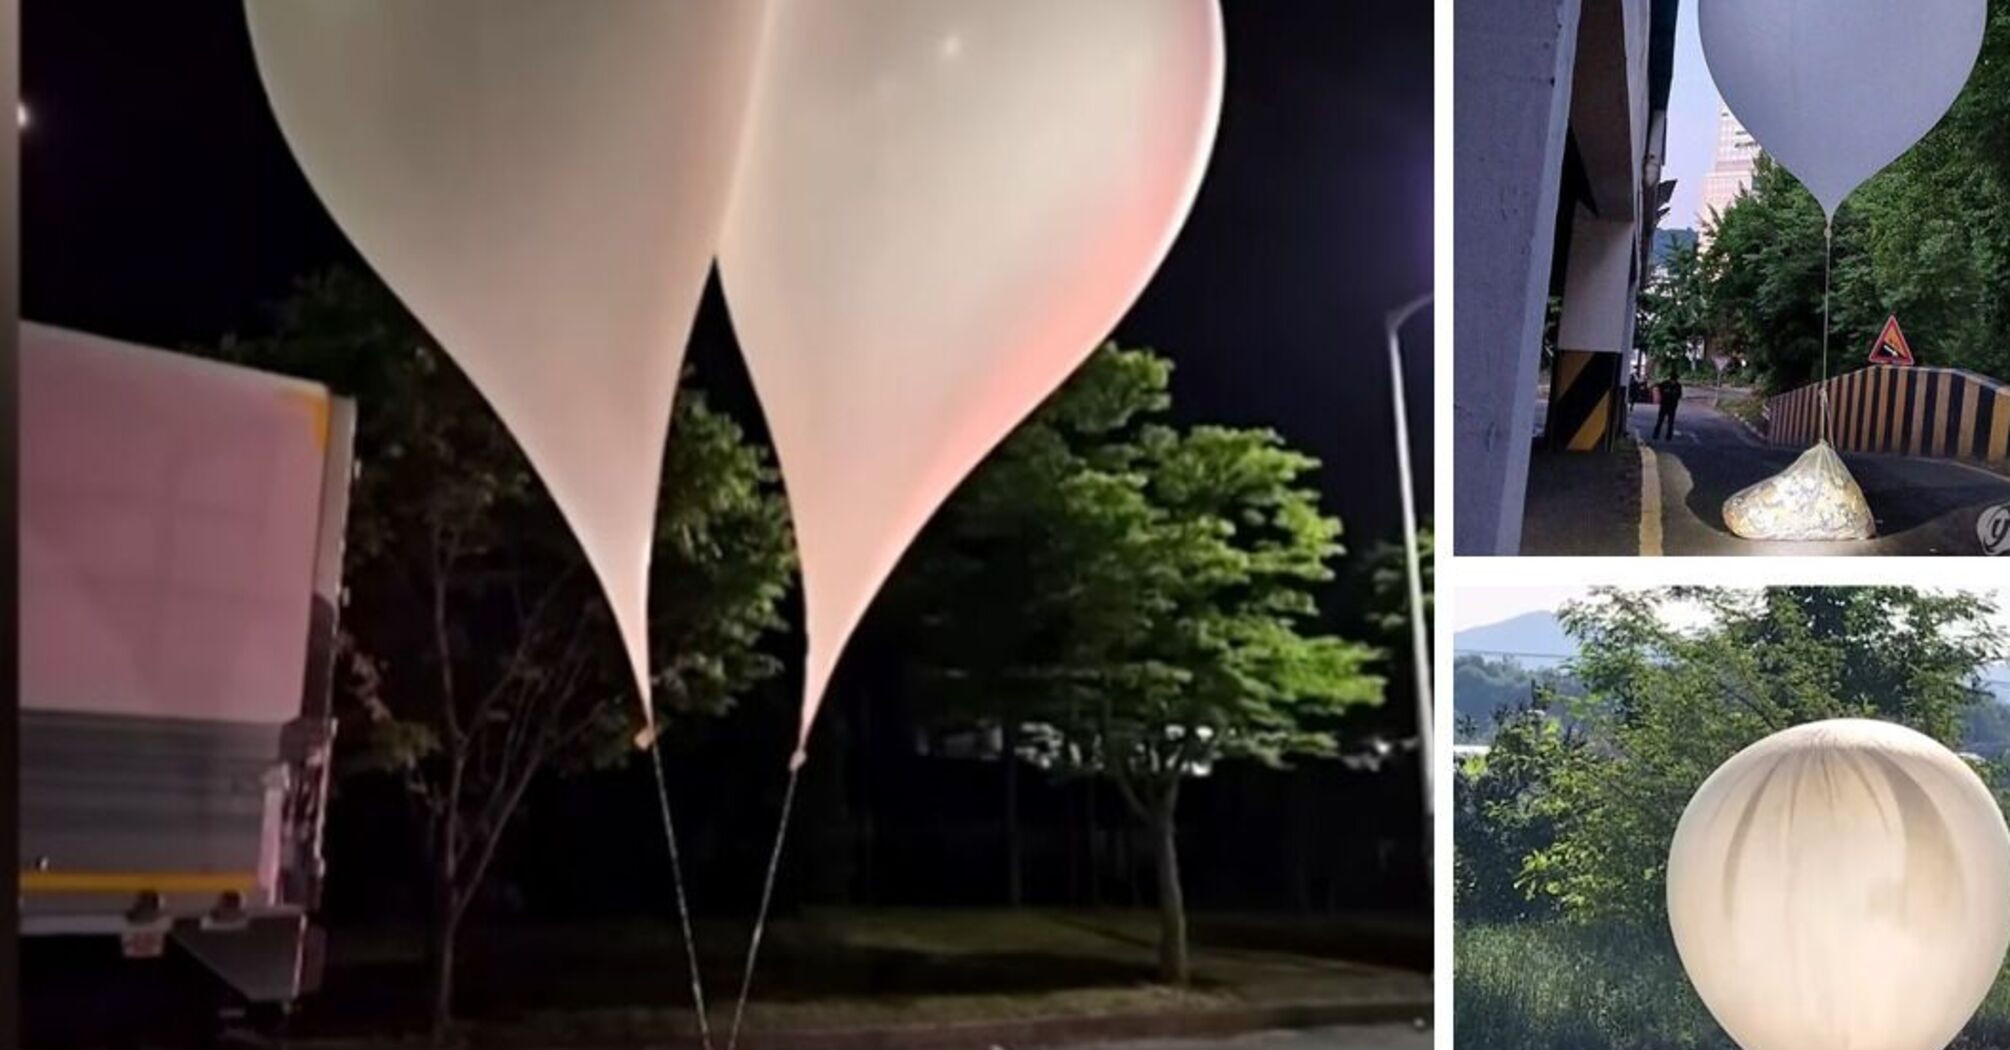 Выпущено более 700 воздушных шаров с мусором: КНДР забросала Южную Корею нечистотами (фото, видео)